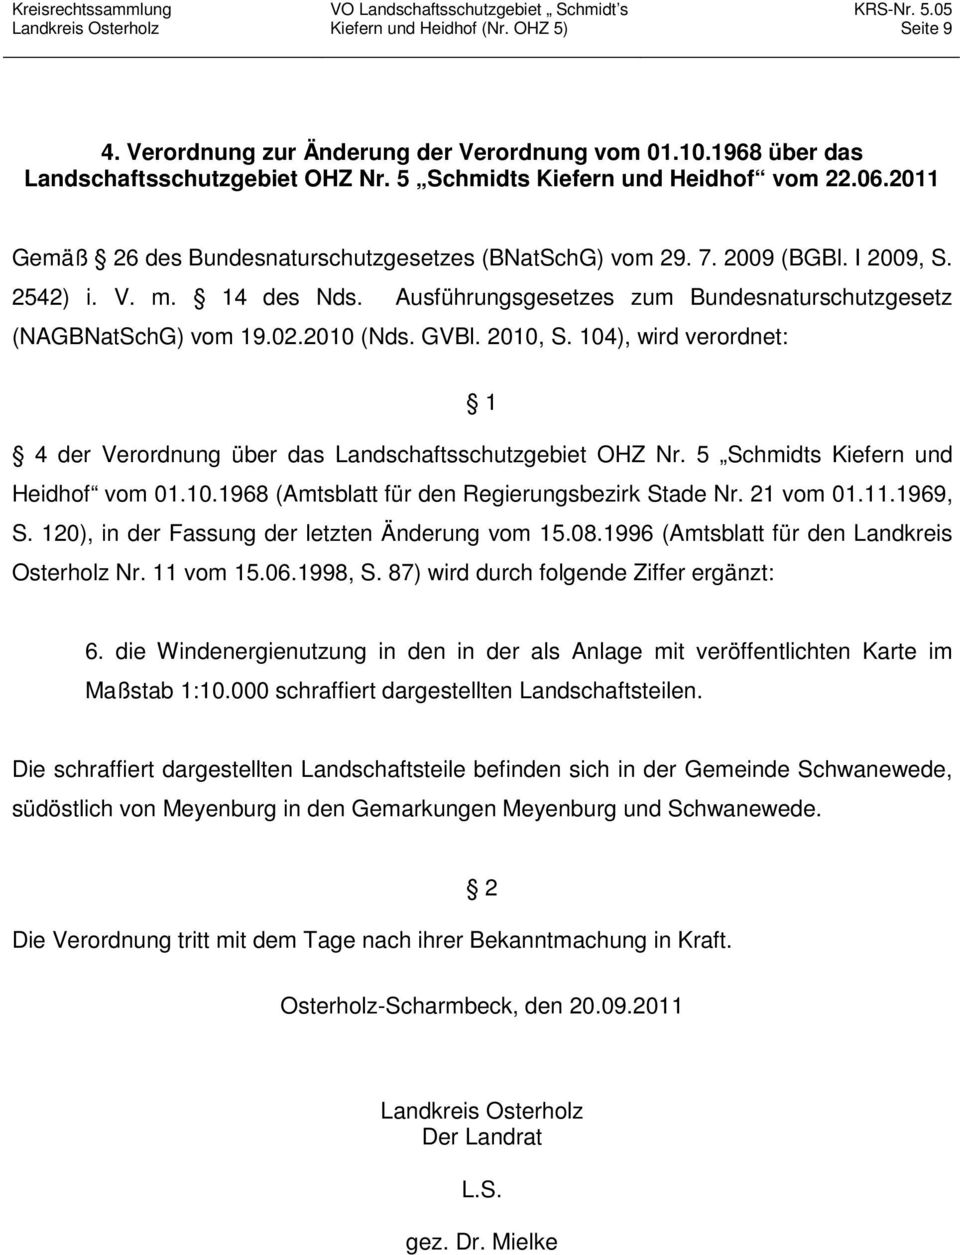 GVBl. 2010, S. 104), wird verordnet: 1 4 der Verordnung über das Landschaftsschutzgebiet OHZ Nr. 5 Schmidts Kiefern und Heidhof vom 01.10.1968 (Amtsblatt für den Regierungsbezirk Stade Nr. 21 vom 01.